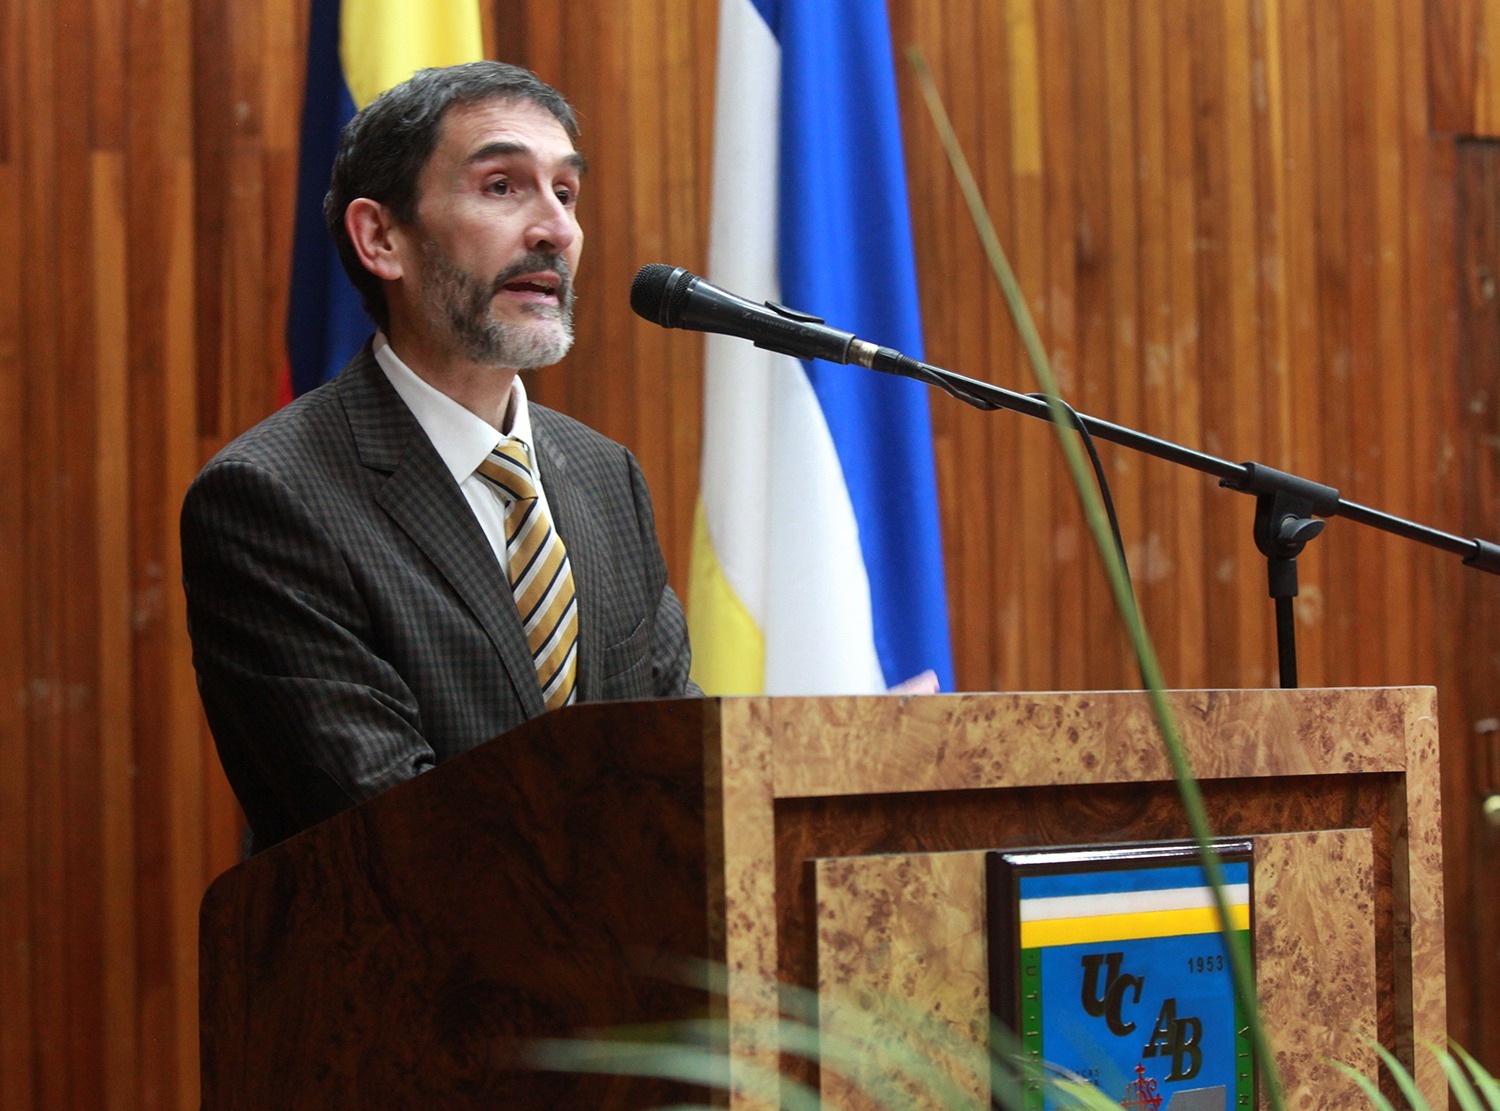 Dr. José Luis Da Silva Pinto